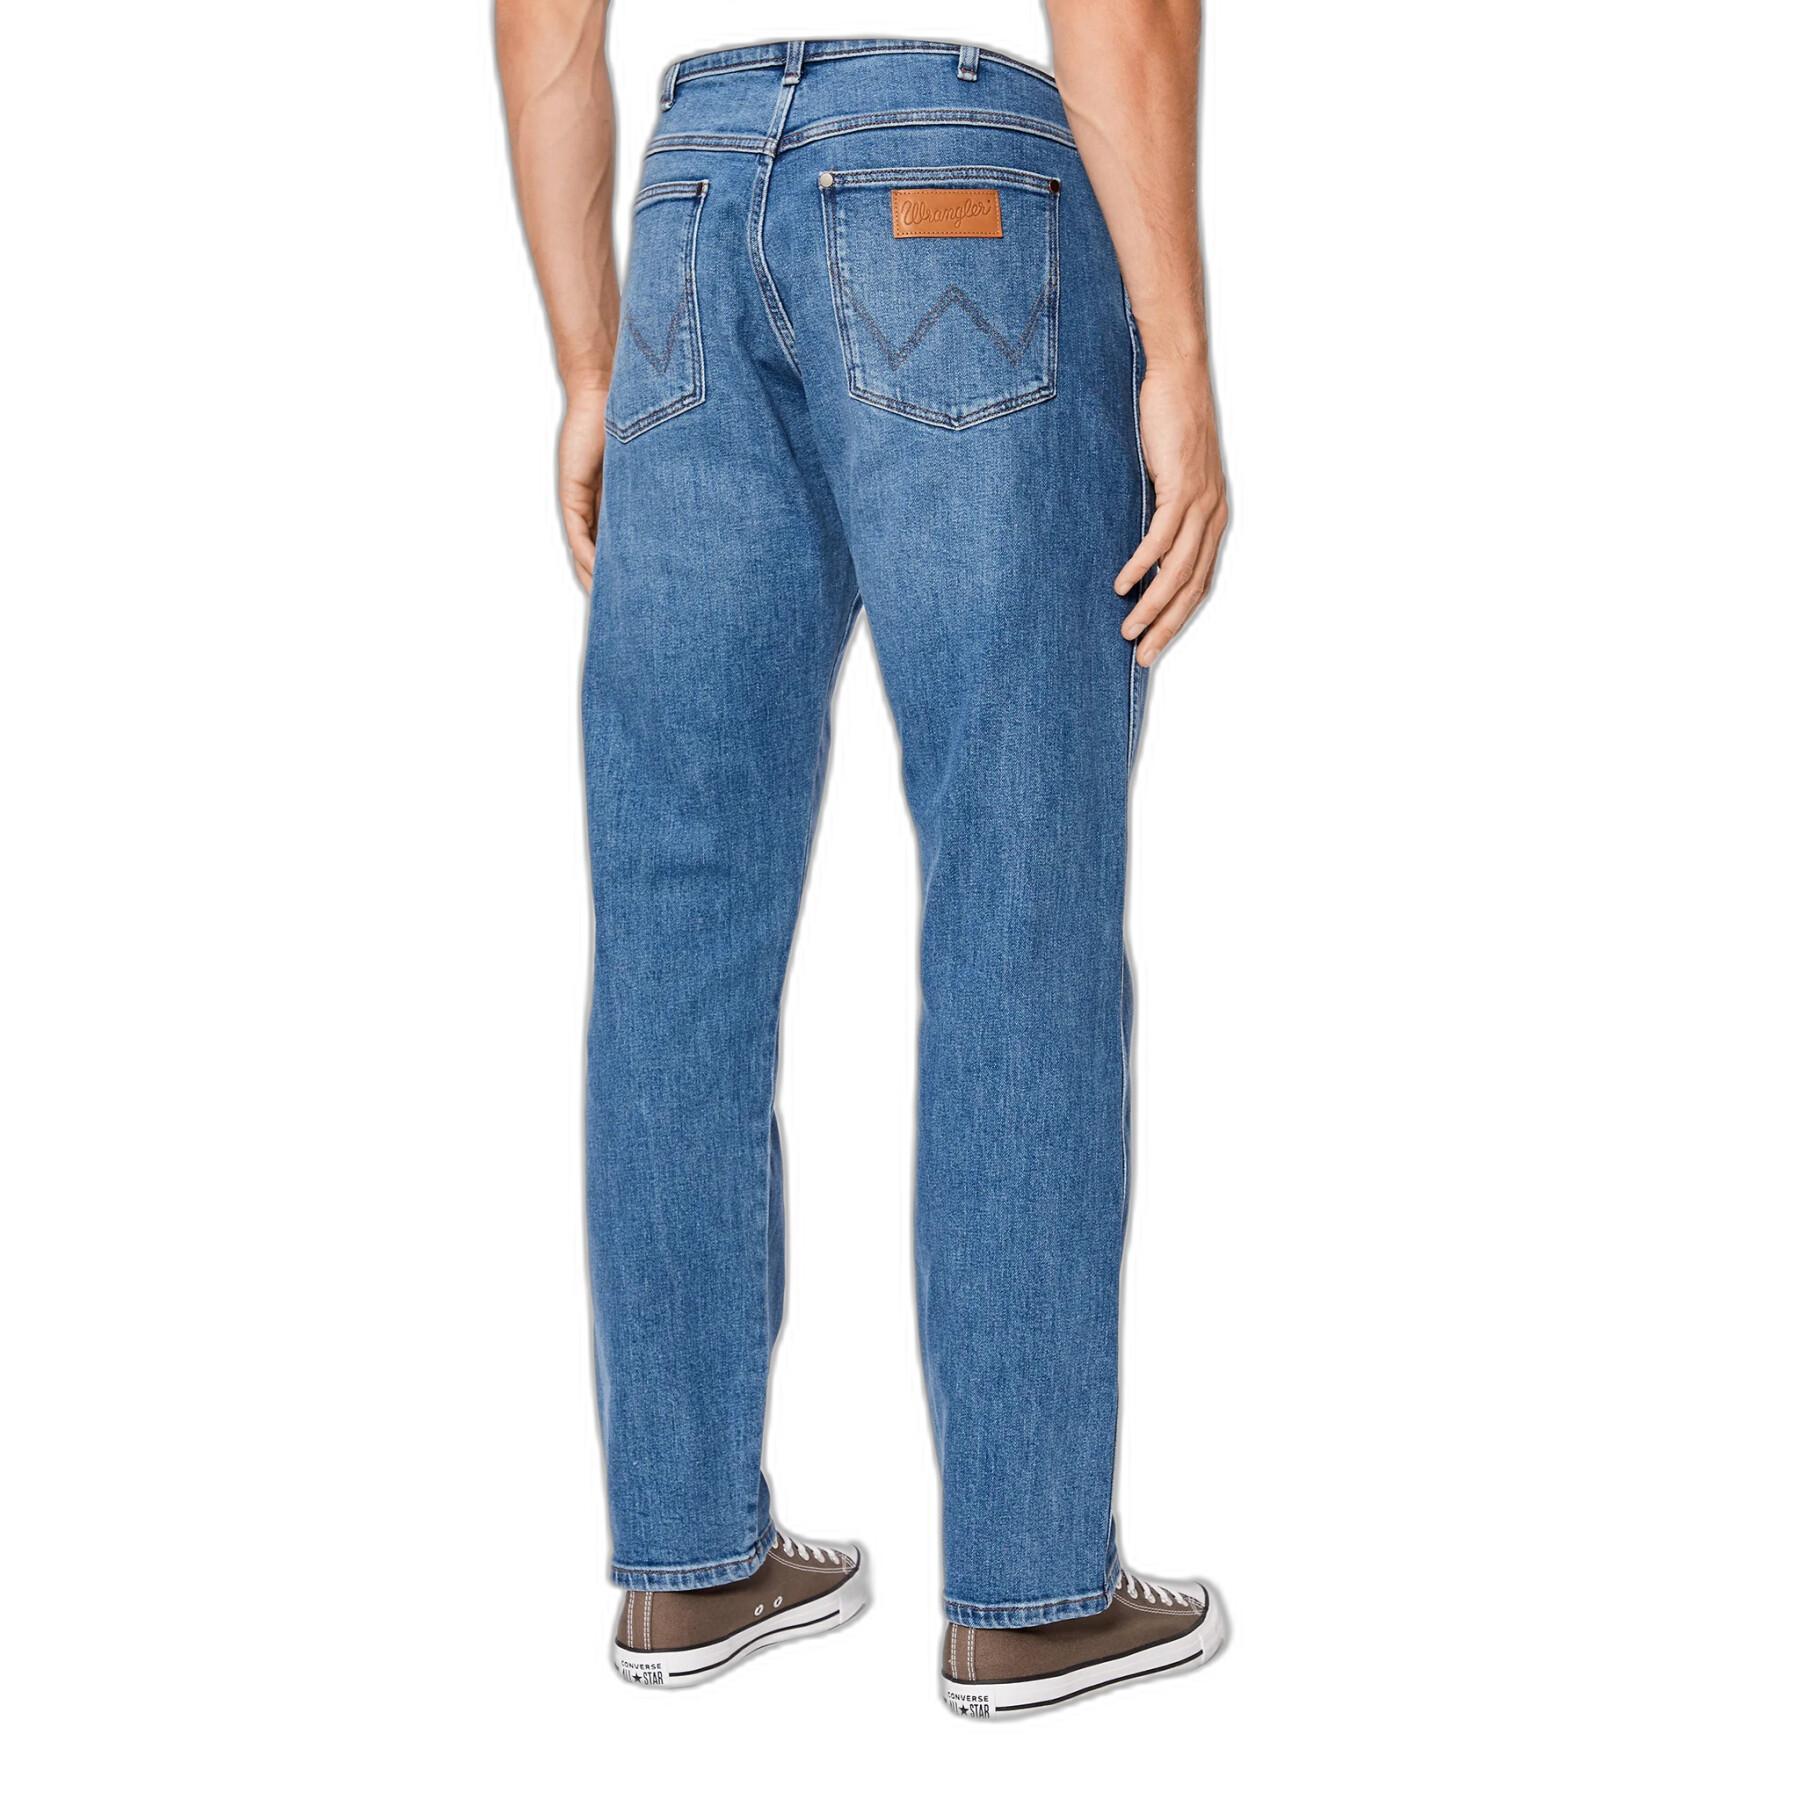 Nuovi jeans Wrangler Frontier Favorite